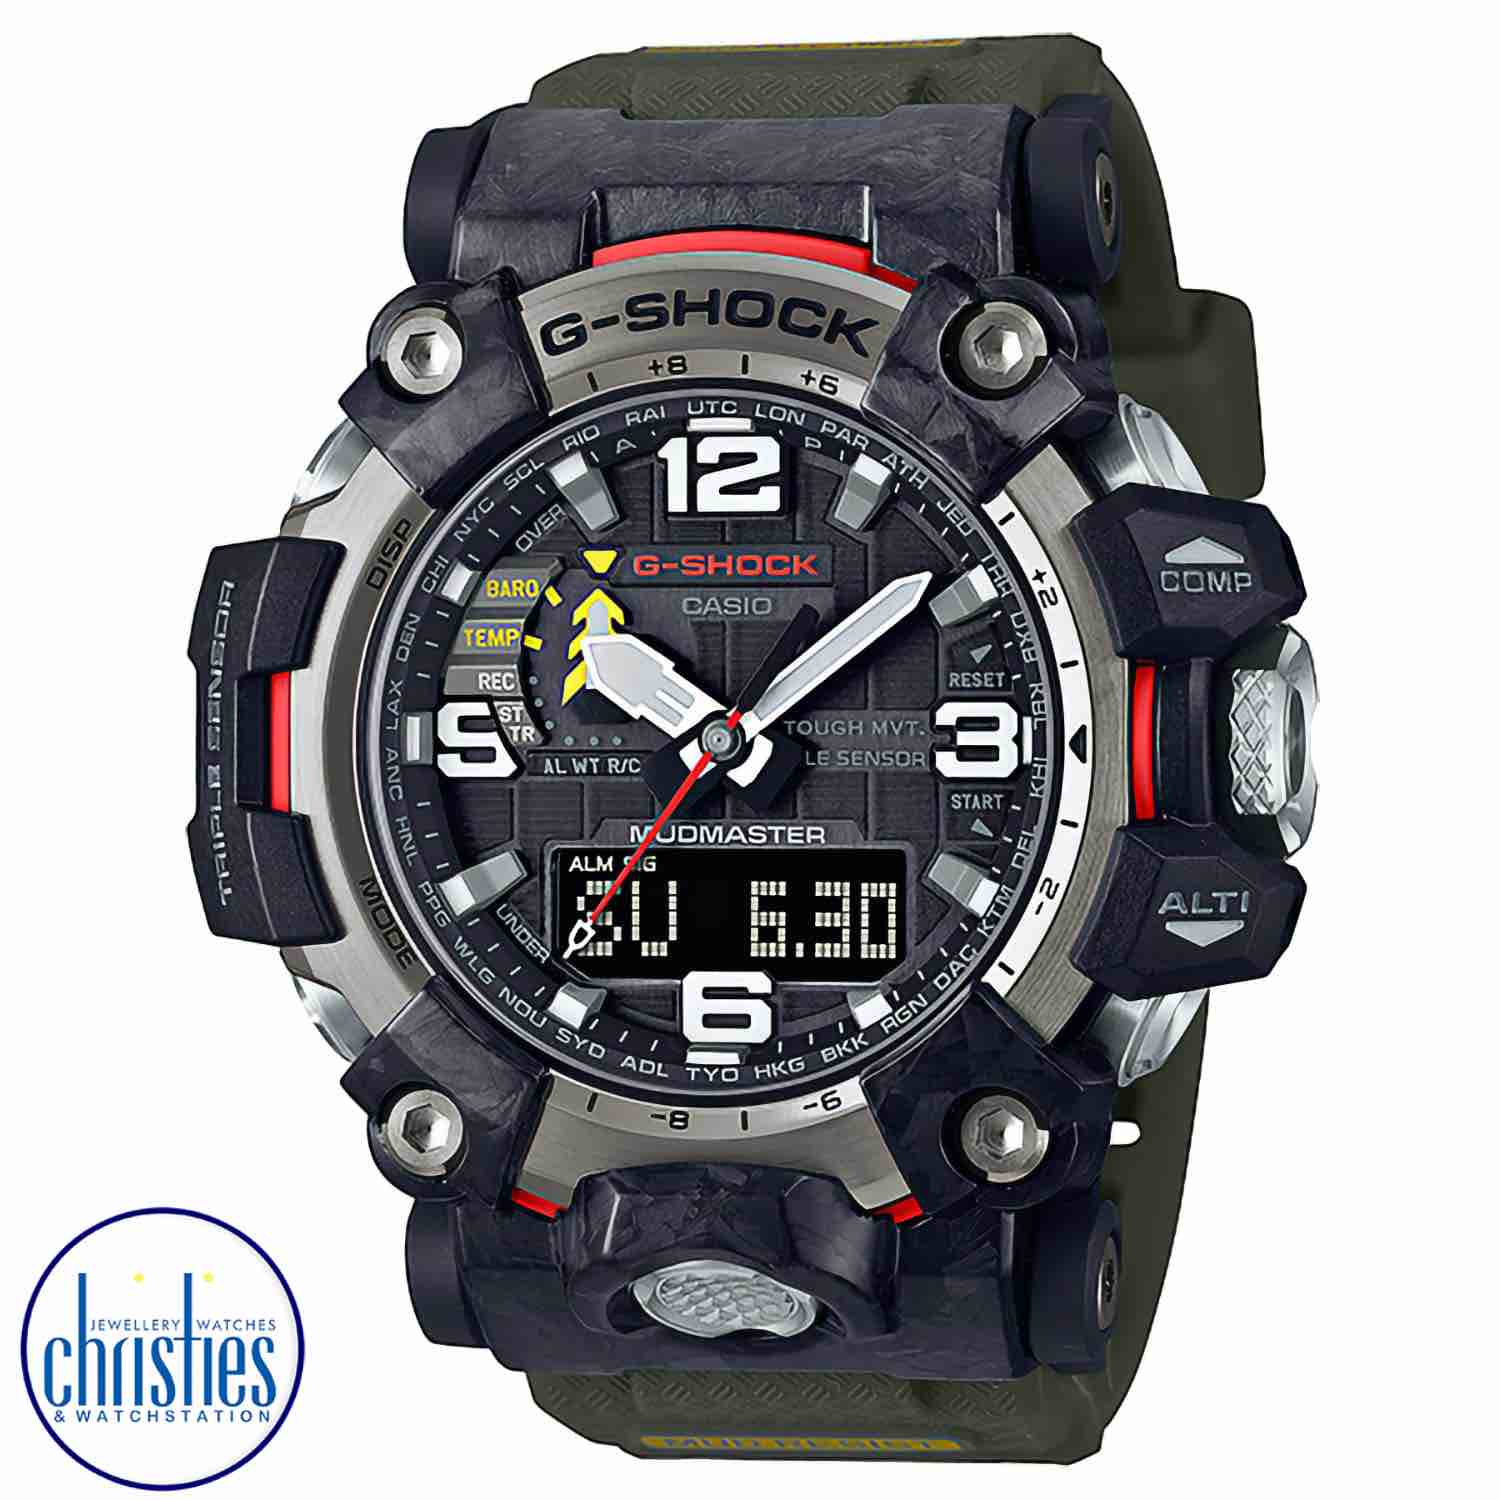 GWG2000-1A3 G-SHOCK Mudmaster Watch.g-shock prices nz